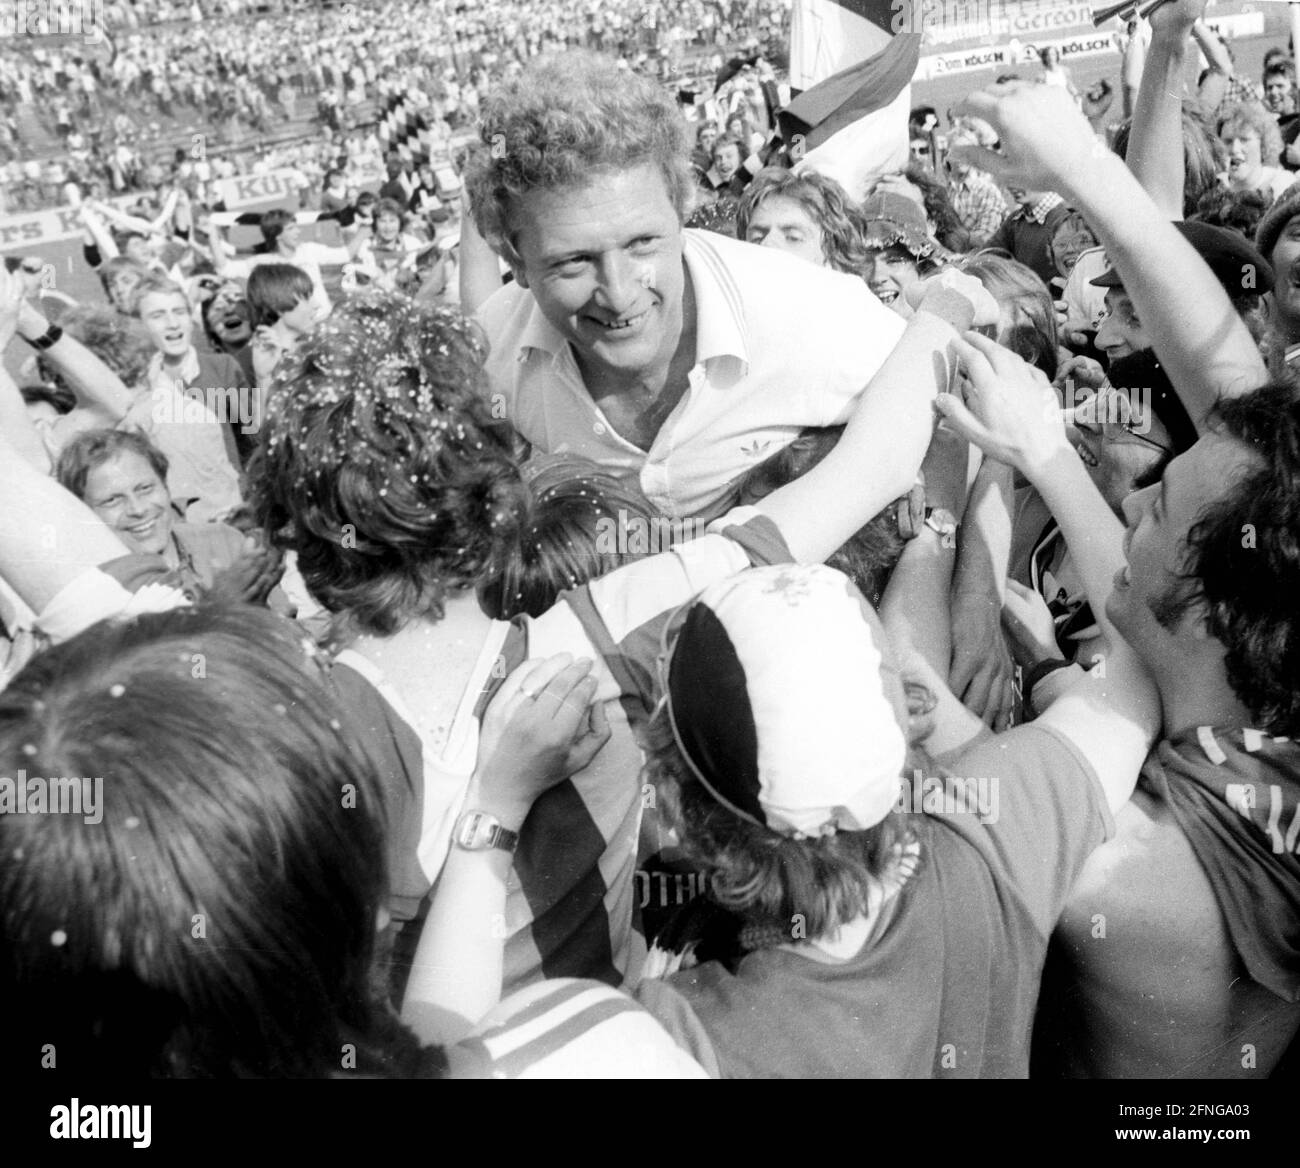 DSC Arminia Bielefeld promu au premier Bundesliga après une victoire 2:0 sur Fortuna Cologne le 27.05.1978. L'entraîneur Karl-Heinz Feldkamp (Arminia) est célébré par les fans. [traduction automatique] Banque D'Images